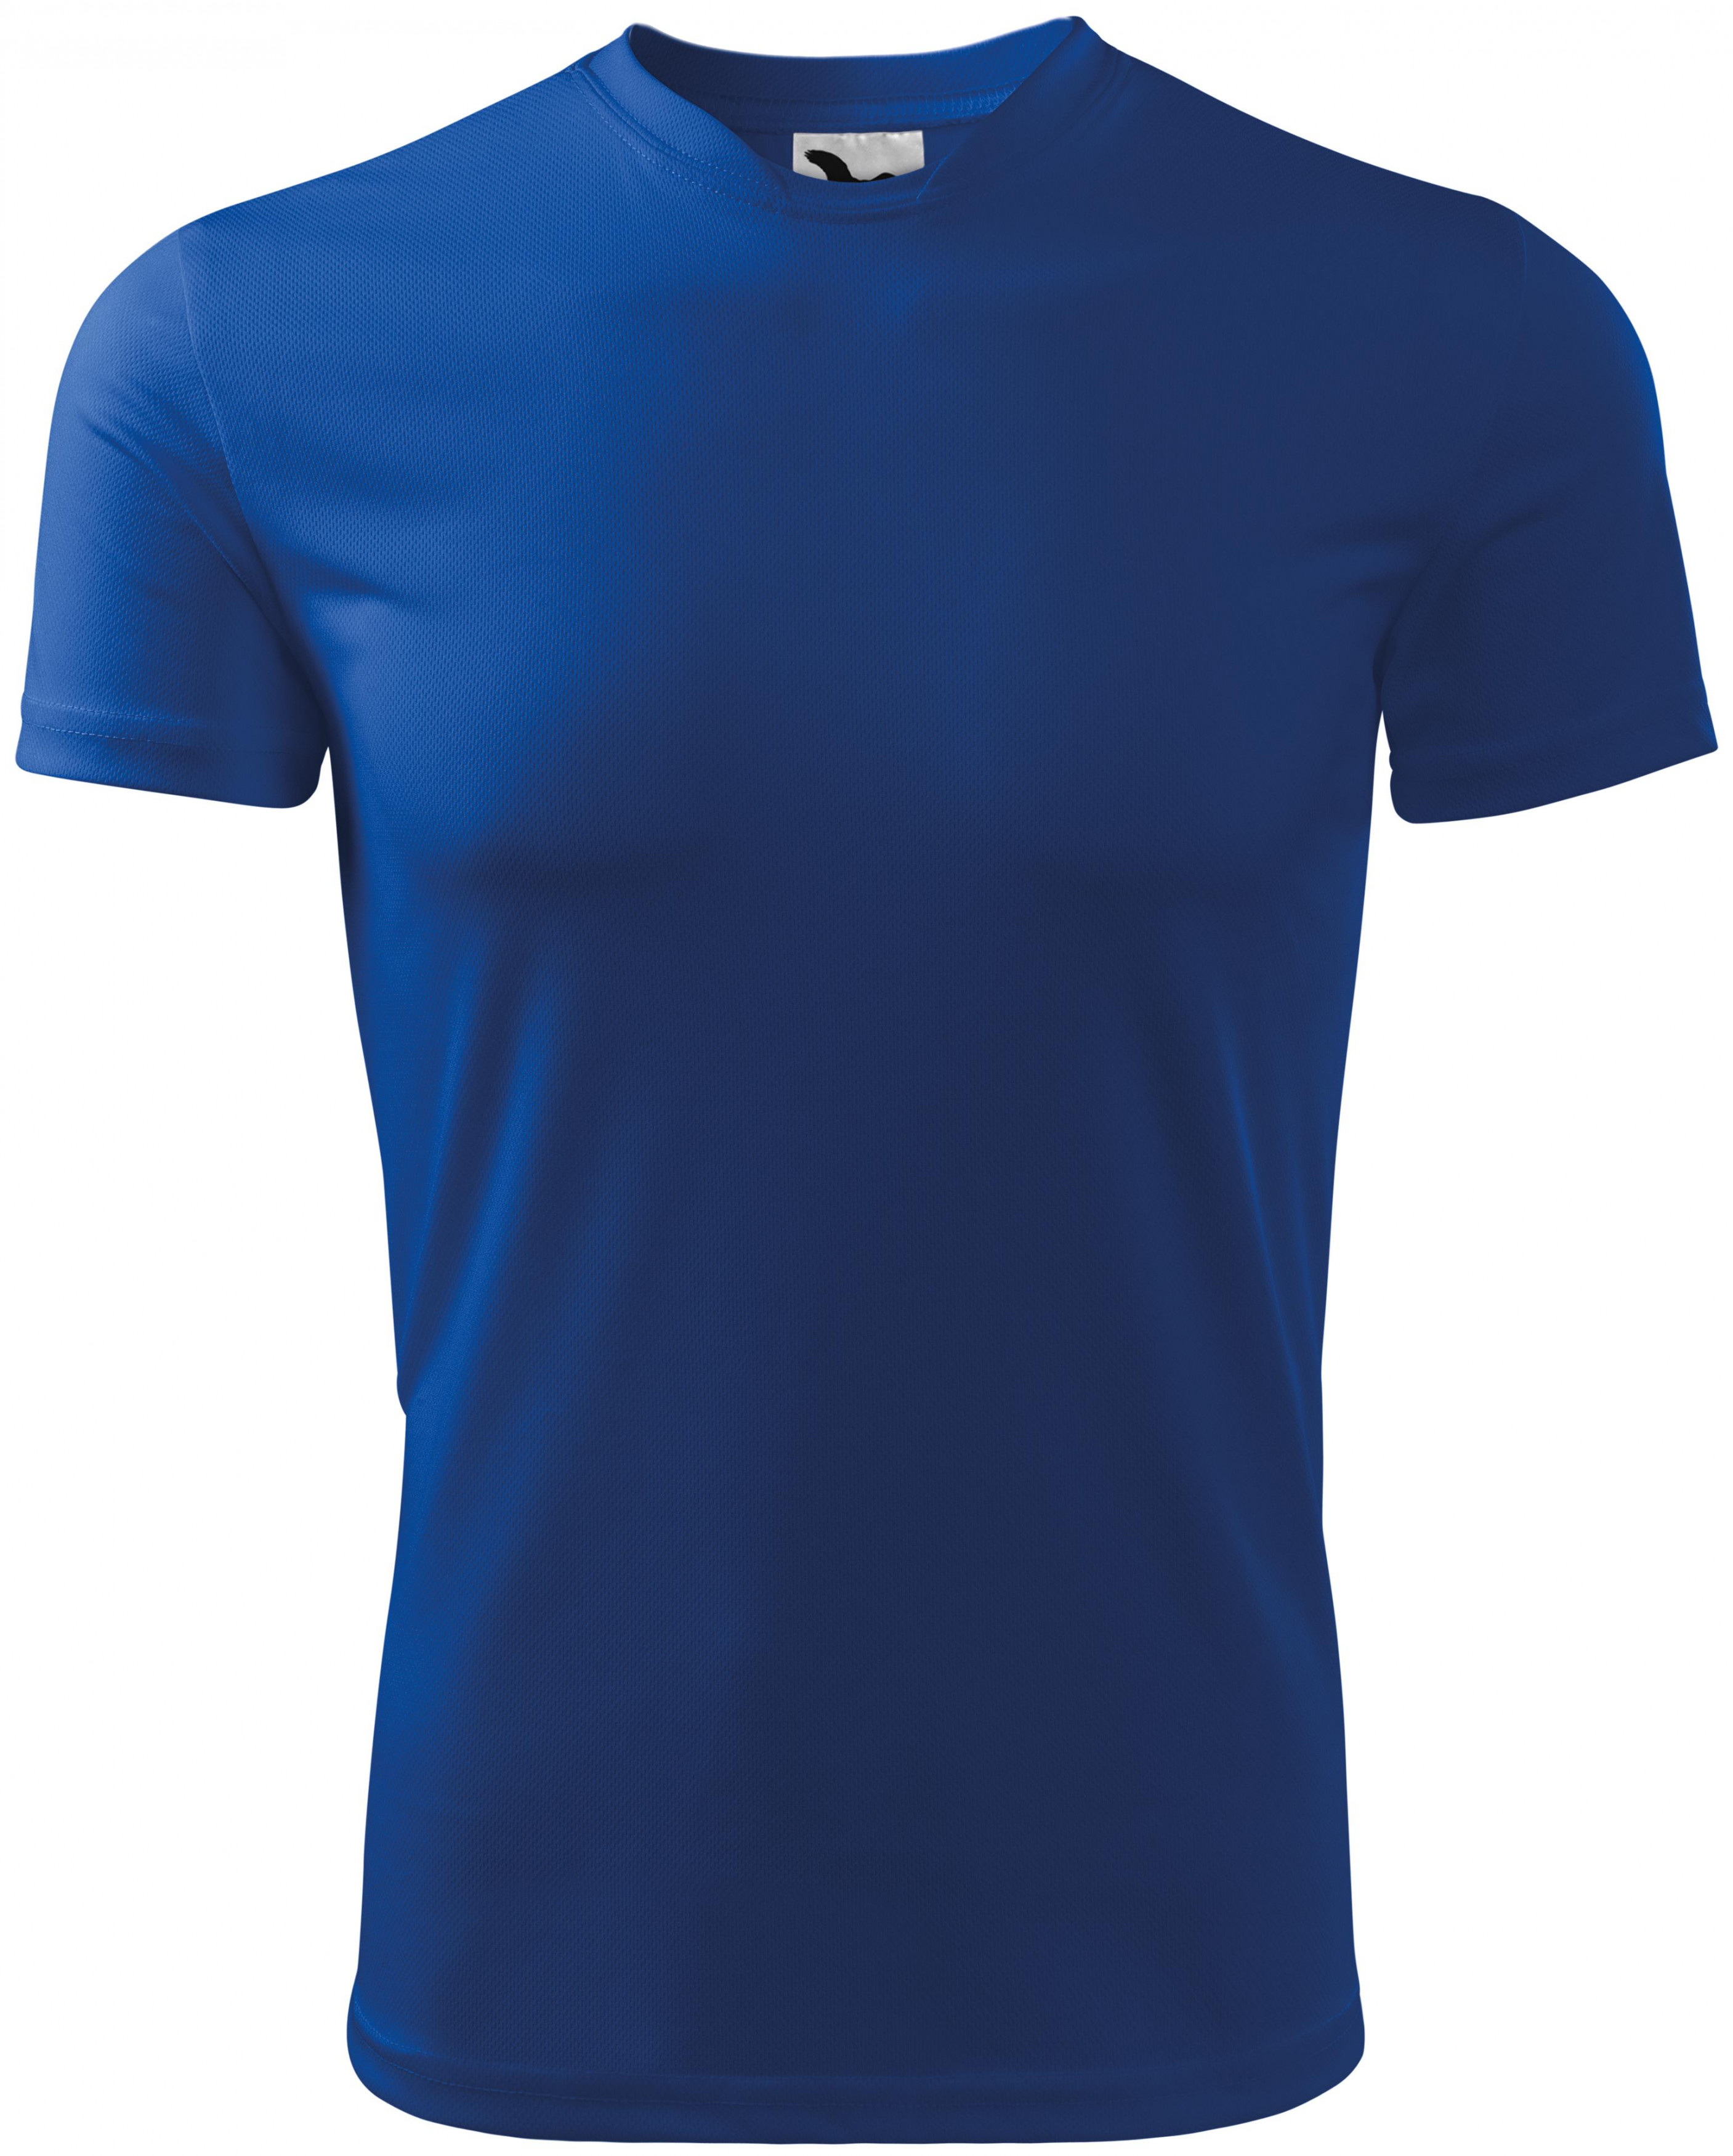 Športové tričko detské, kráľovská modrá, 134cm / 8rokov